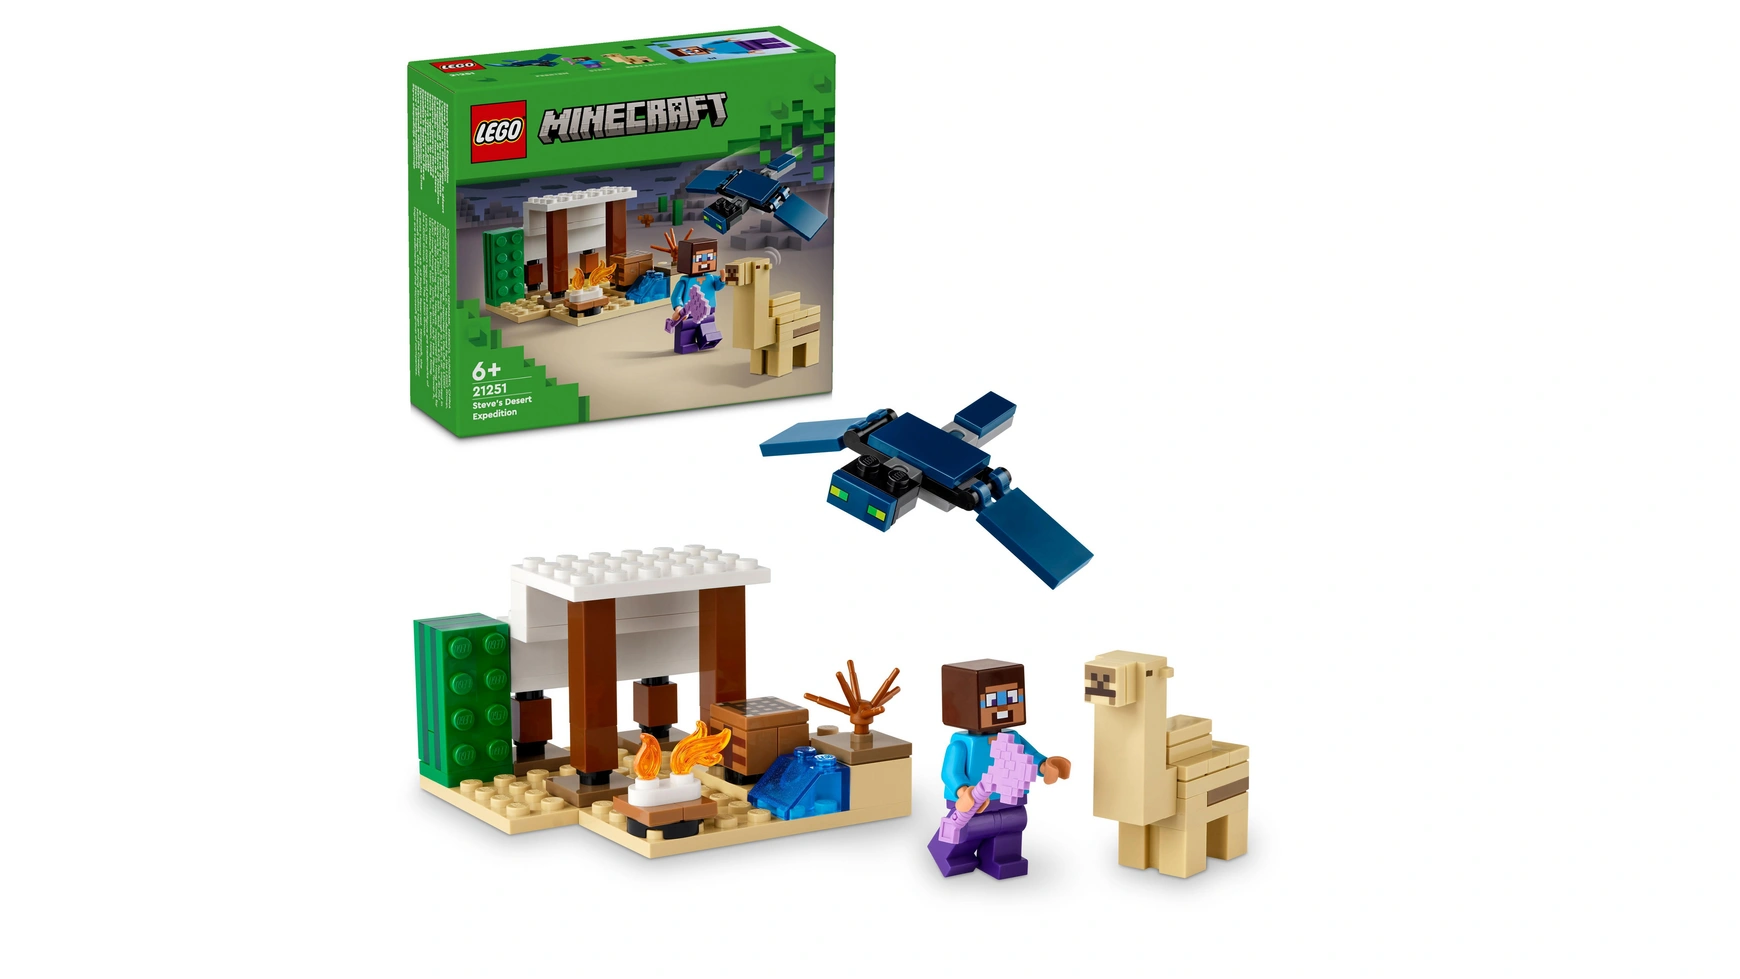 Lego Minecraft Экспедиция Стива в пустыню, набор игрушек для сборки lego classic синяя строительная пластина опорная плита для наборов lego 32x32